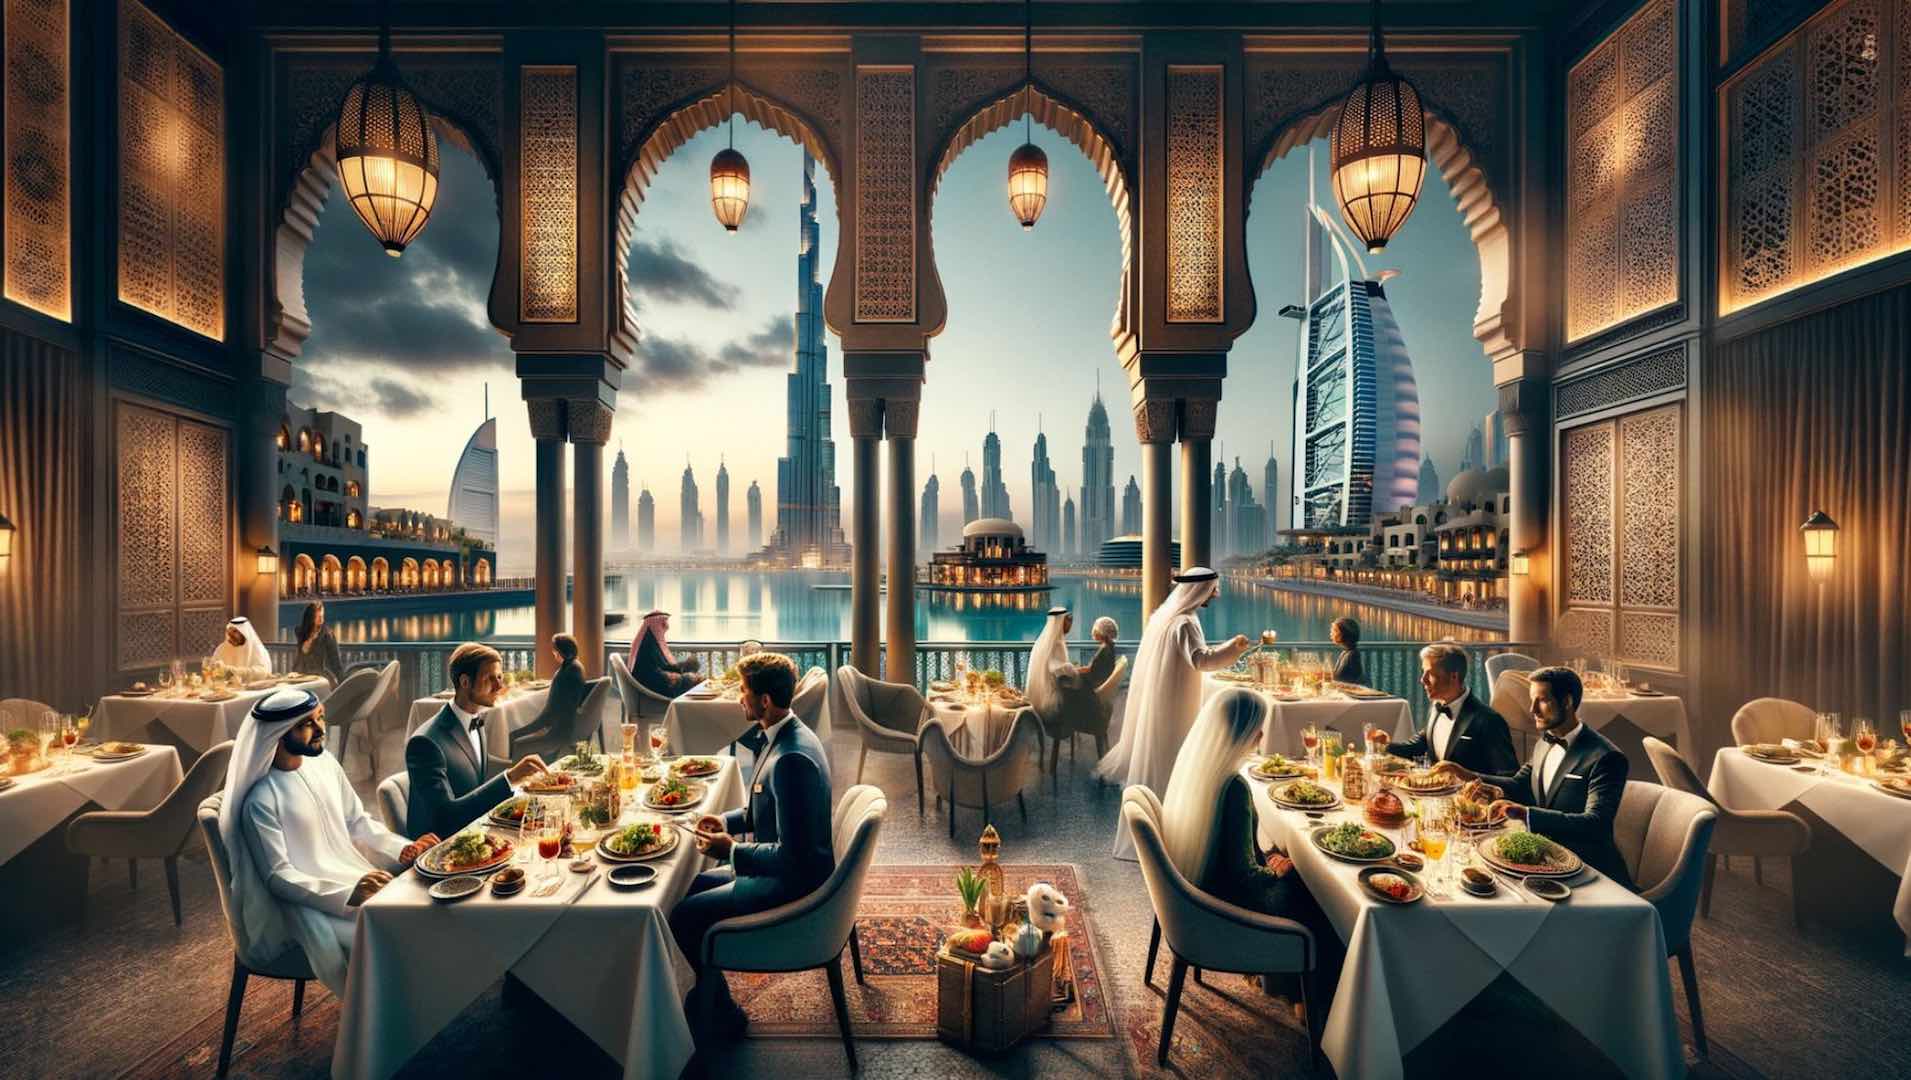 إنفاق قياسي بقيمة 12 مليار درهم على الطعام في فنادق الإمارات خلال العام الماضي